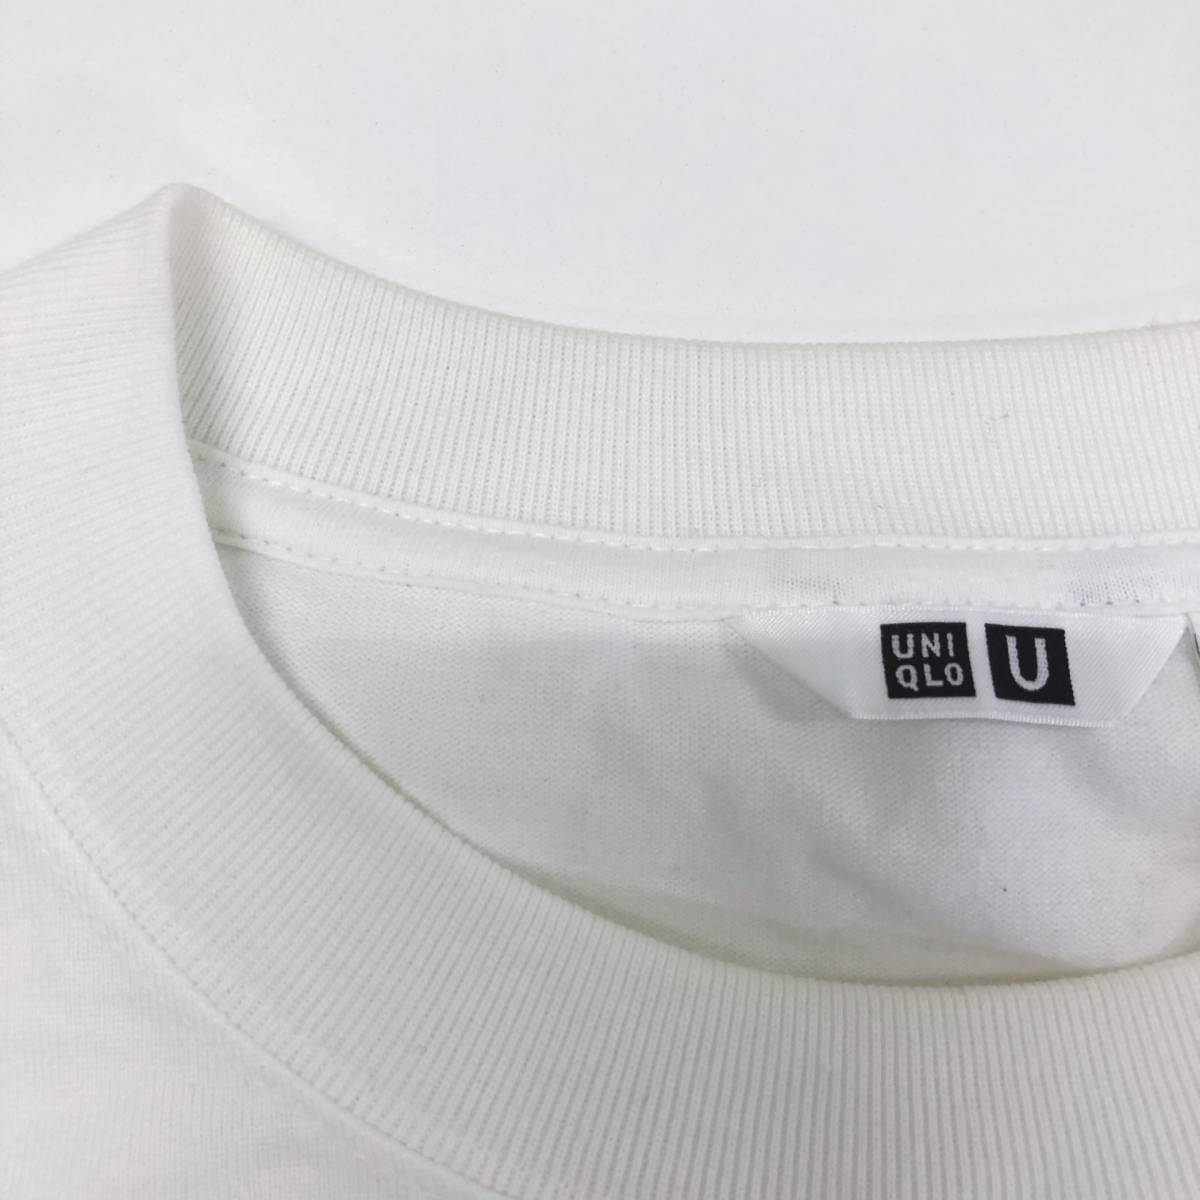 X161 UNIQLO メンズトップスTシャツ 長袖 薄手 丸首 胸ポケット Lサイズ ホワイト 白 無地 綿100% カジュアル シンプル おしゃれ 春秋 休日の画像8